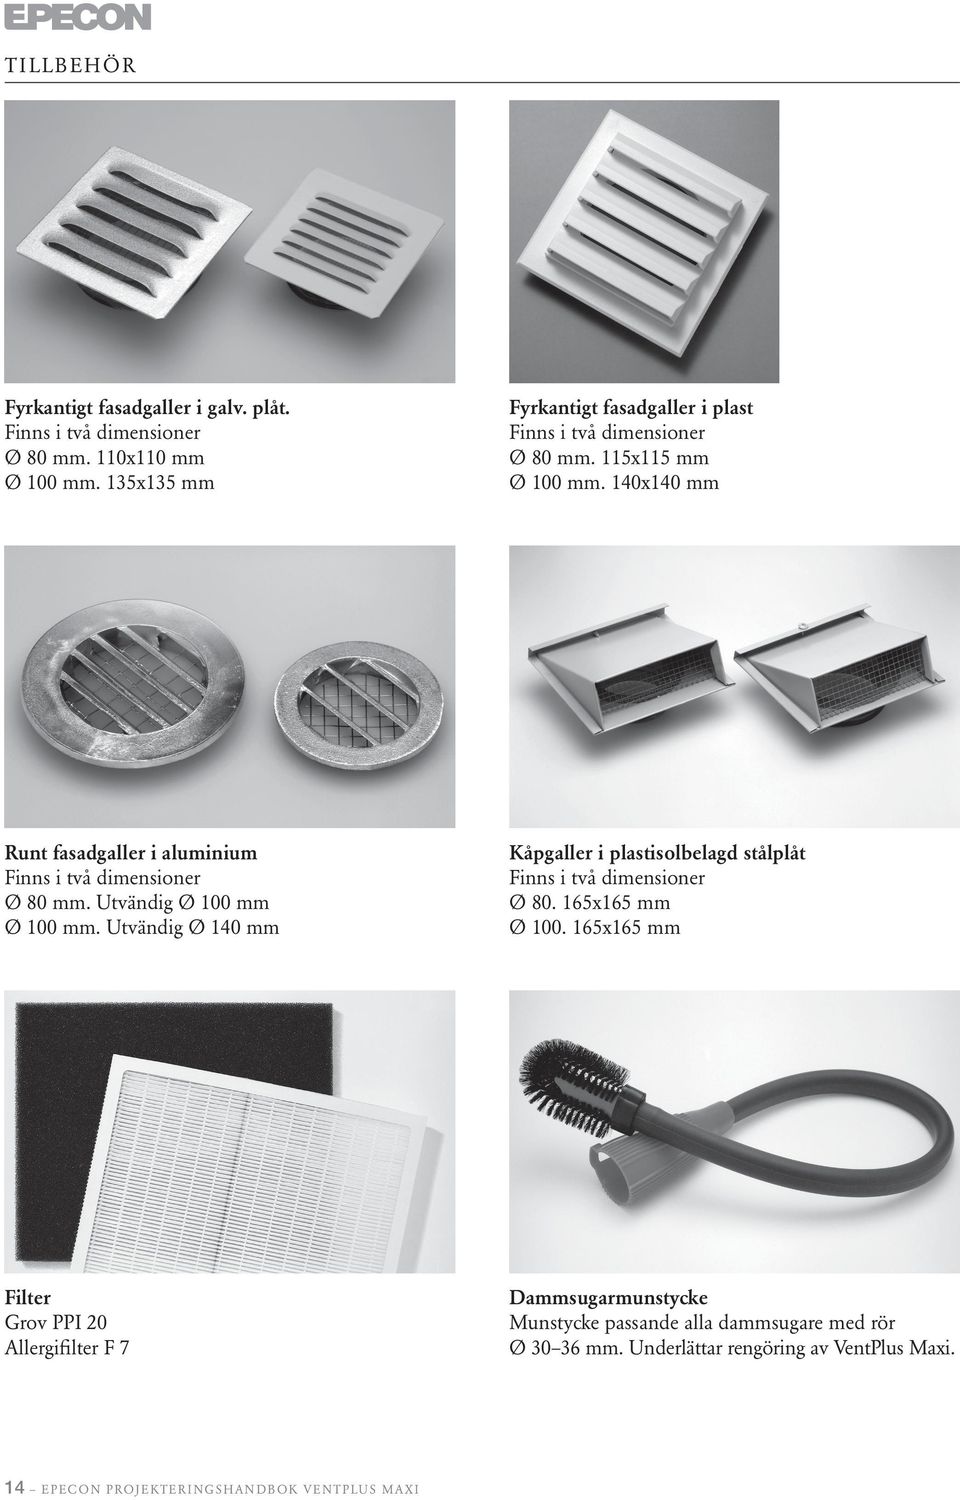 14x14 mm Runt fasadgaller i aluminium Finns i två dimensioner Ø 8 mm. Utvändig Ø 1 mm Ø 1 mm.